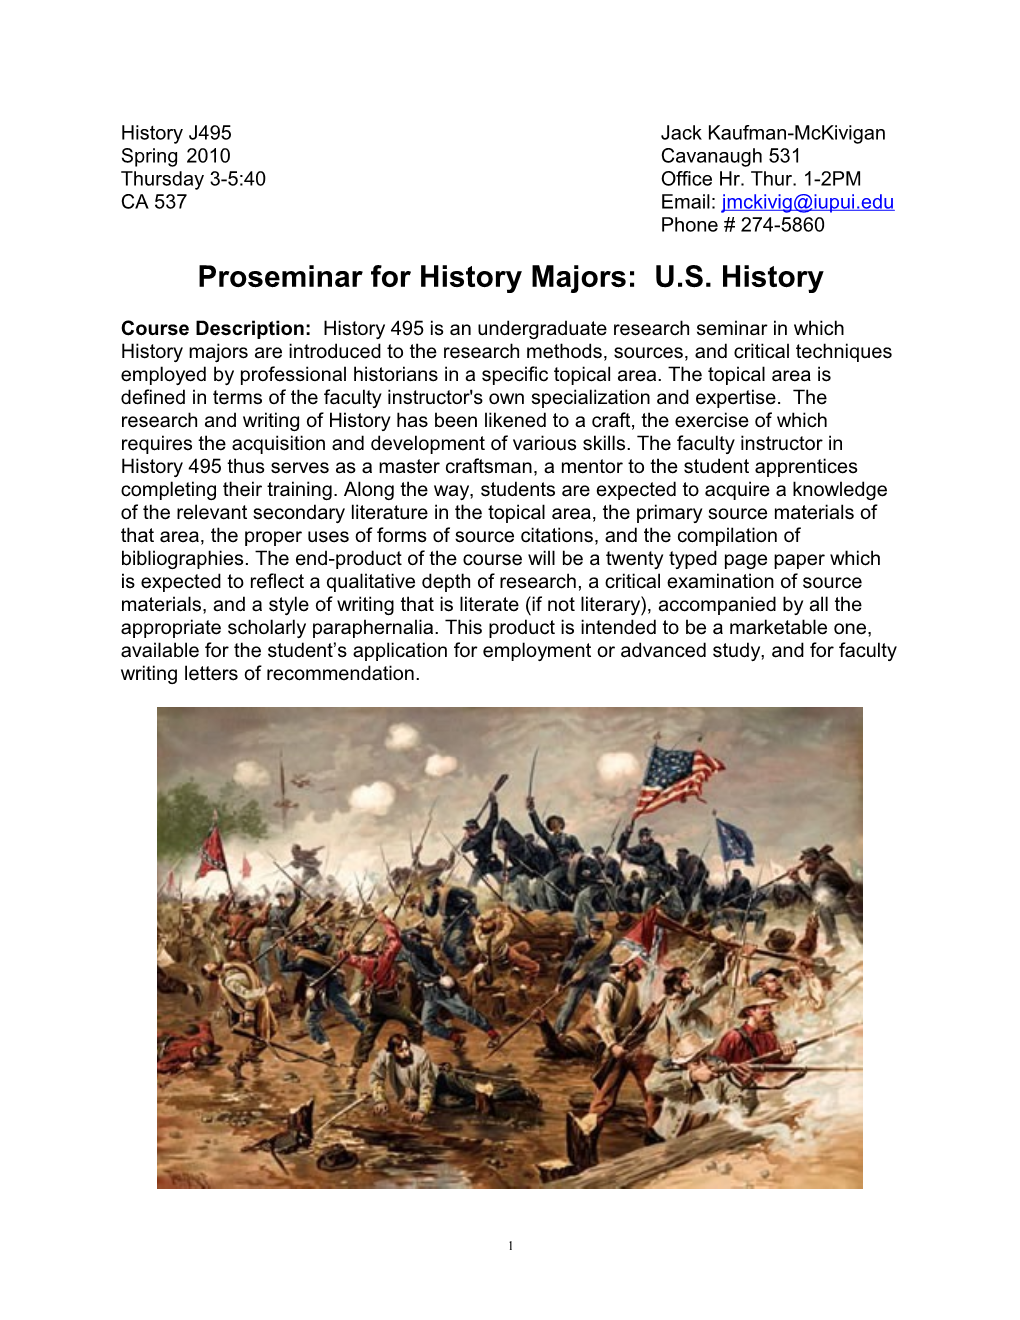 Proseminar for History Majors:U.S. History